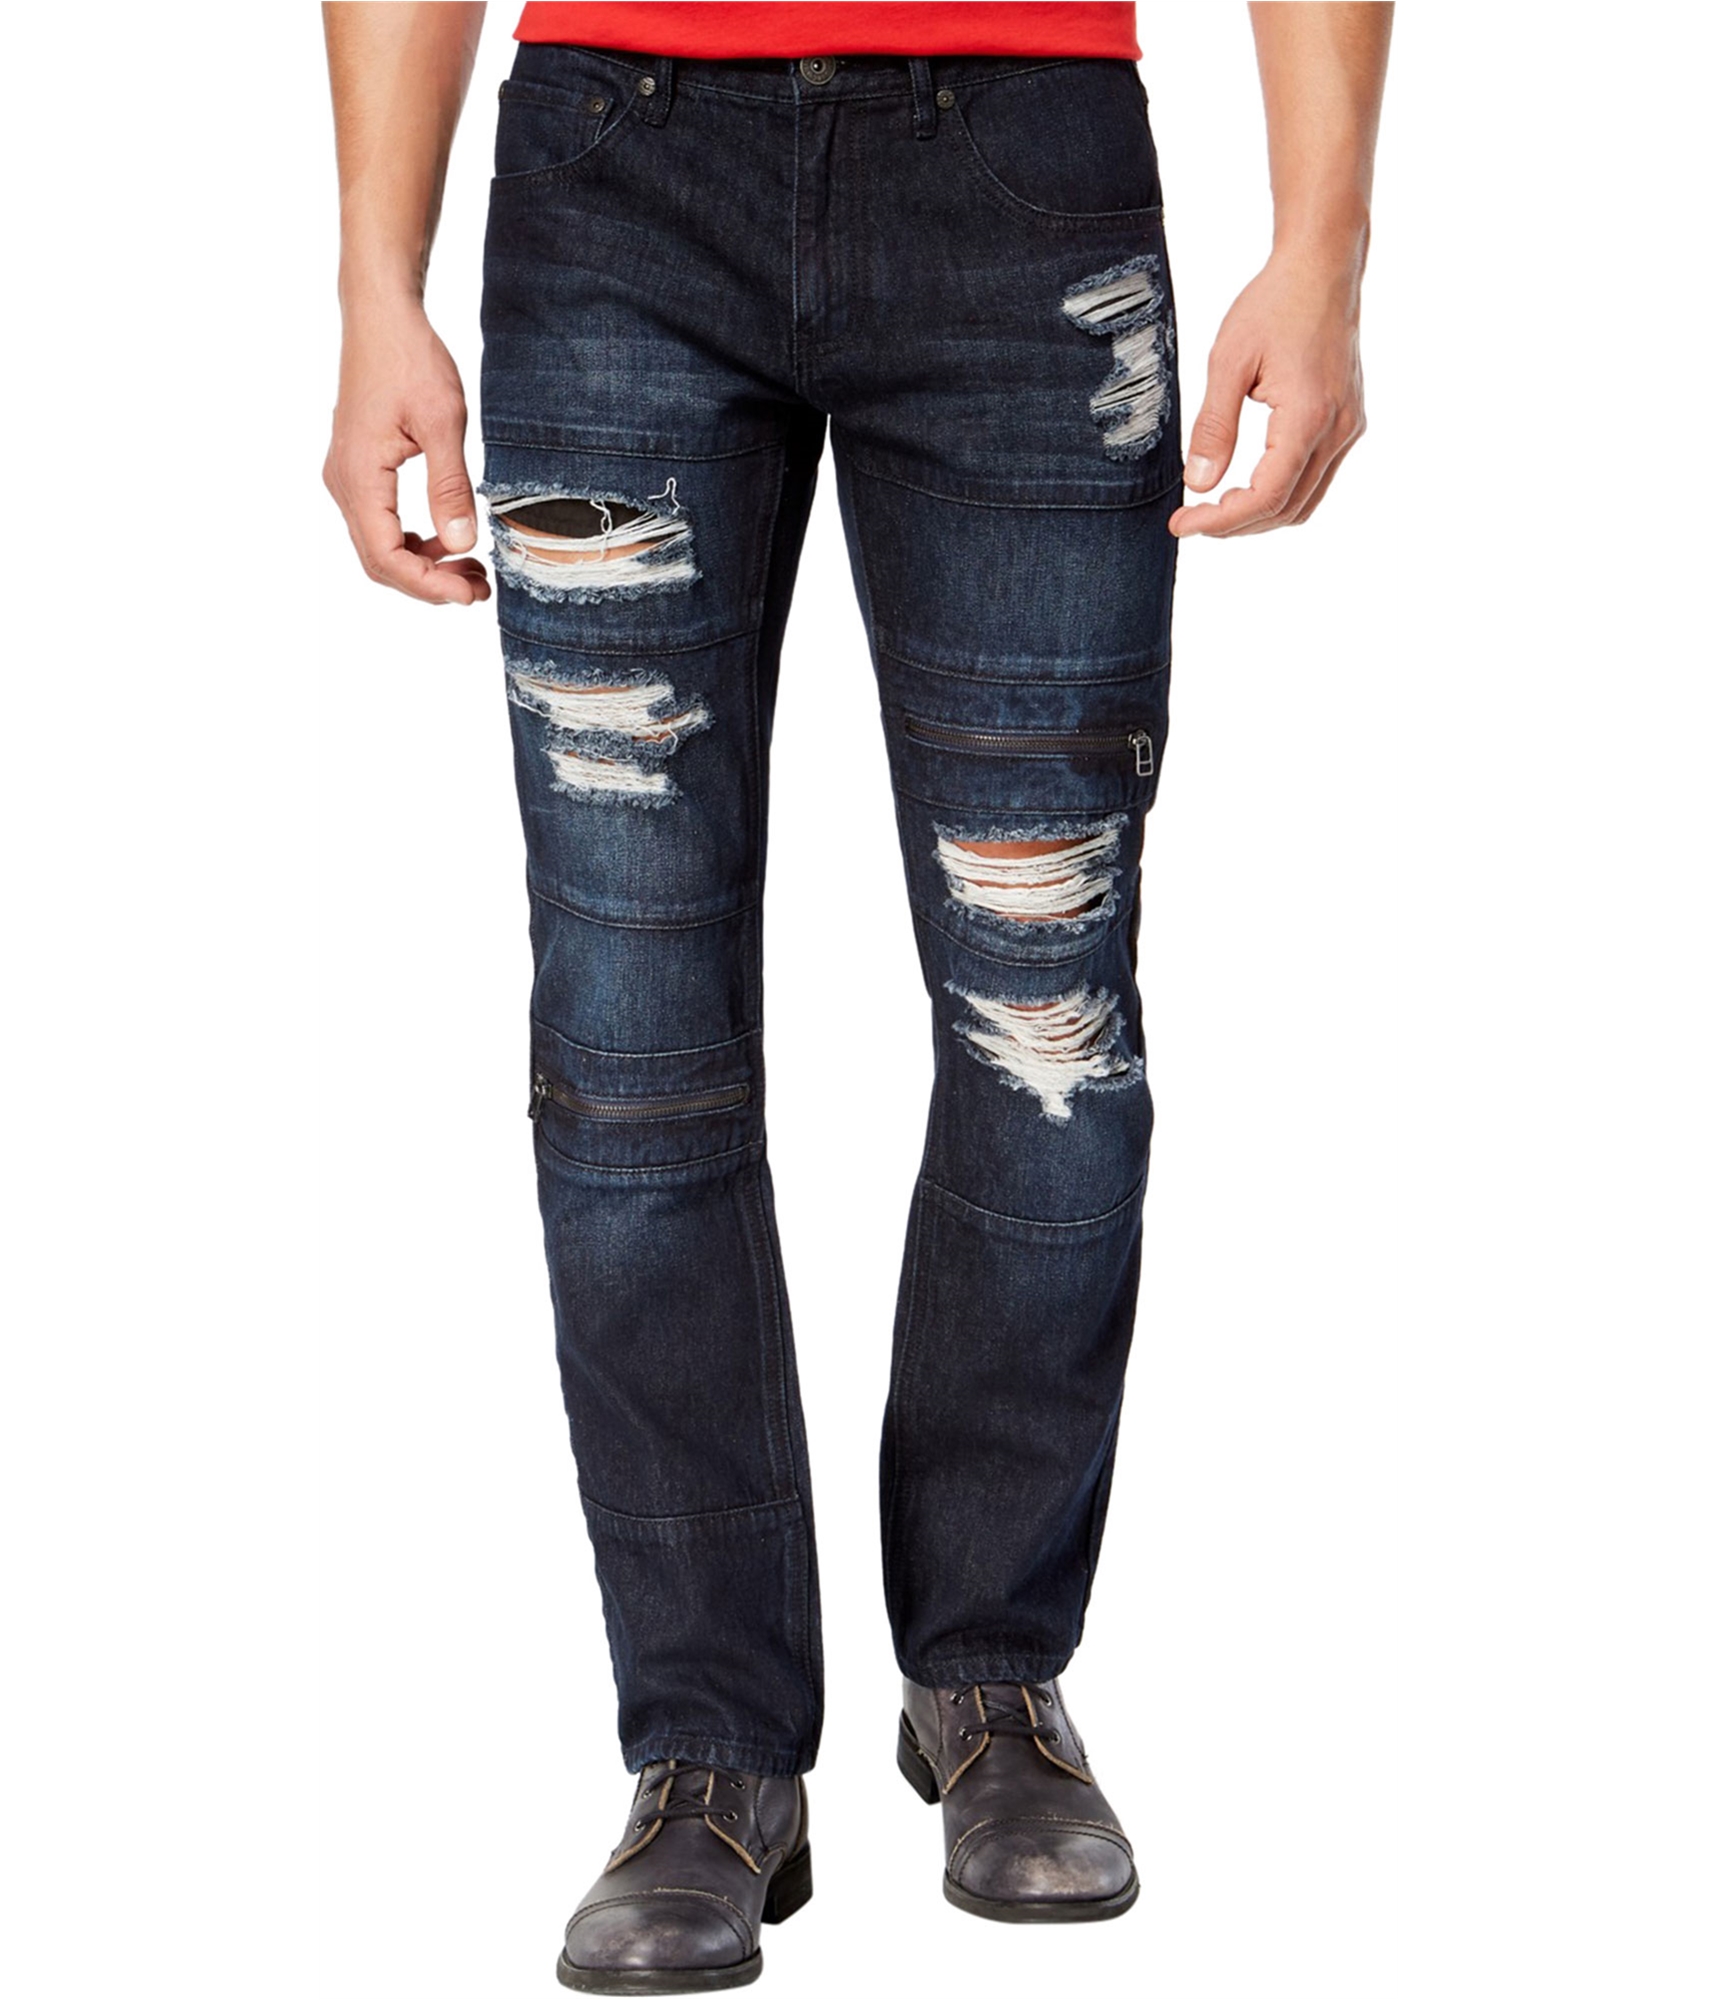 I-N-C Mens Ripped Slim Fit Jeans, Blue, 32W x 32L | eBay